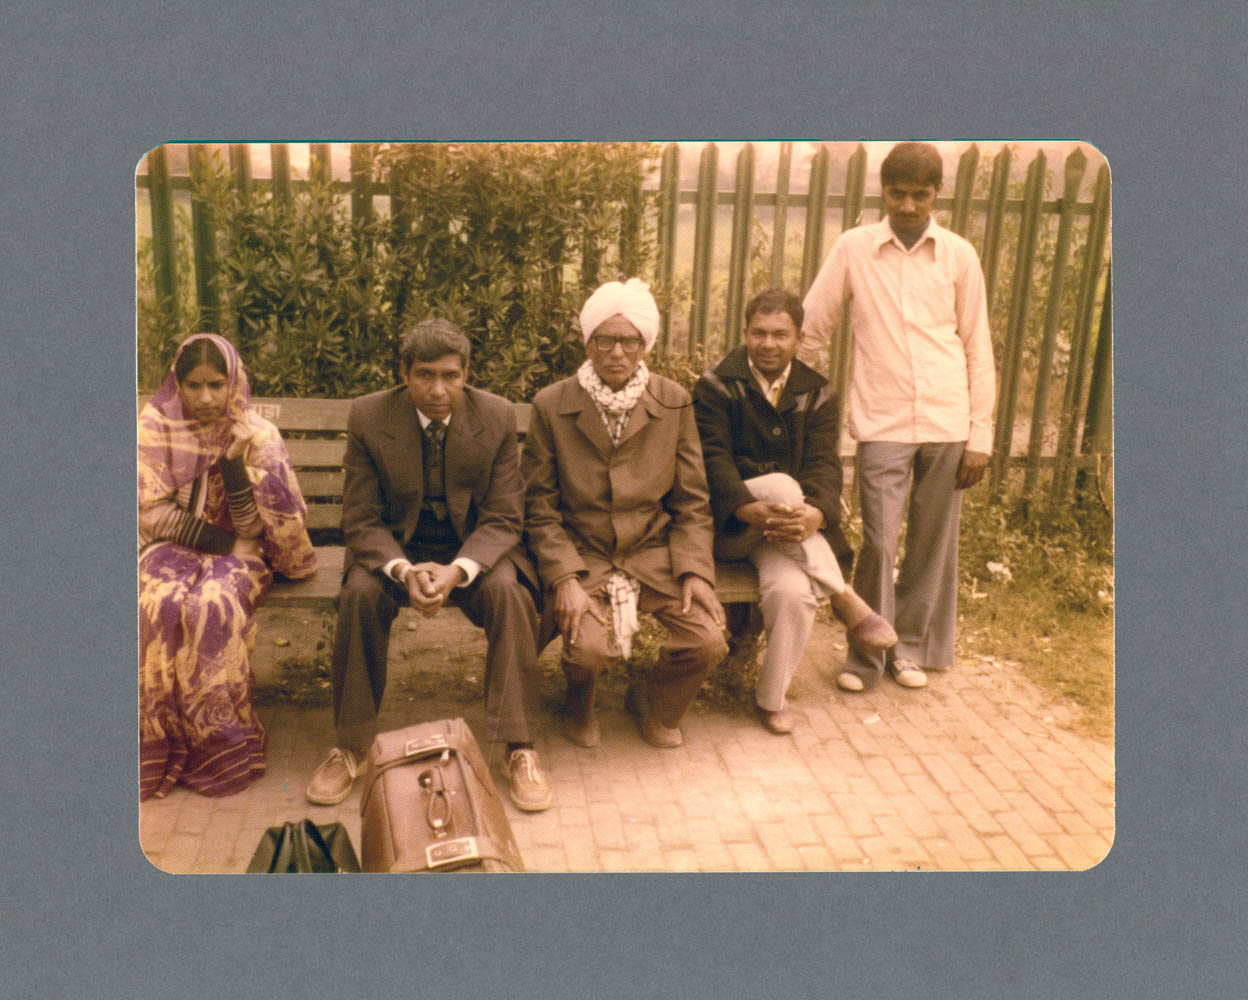 Horshairpur, Punjab c.1982